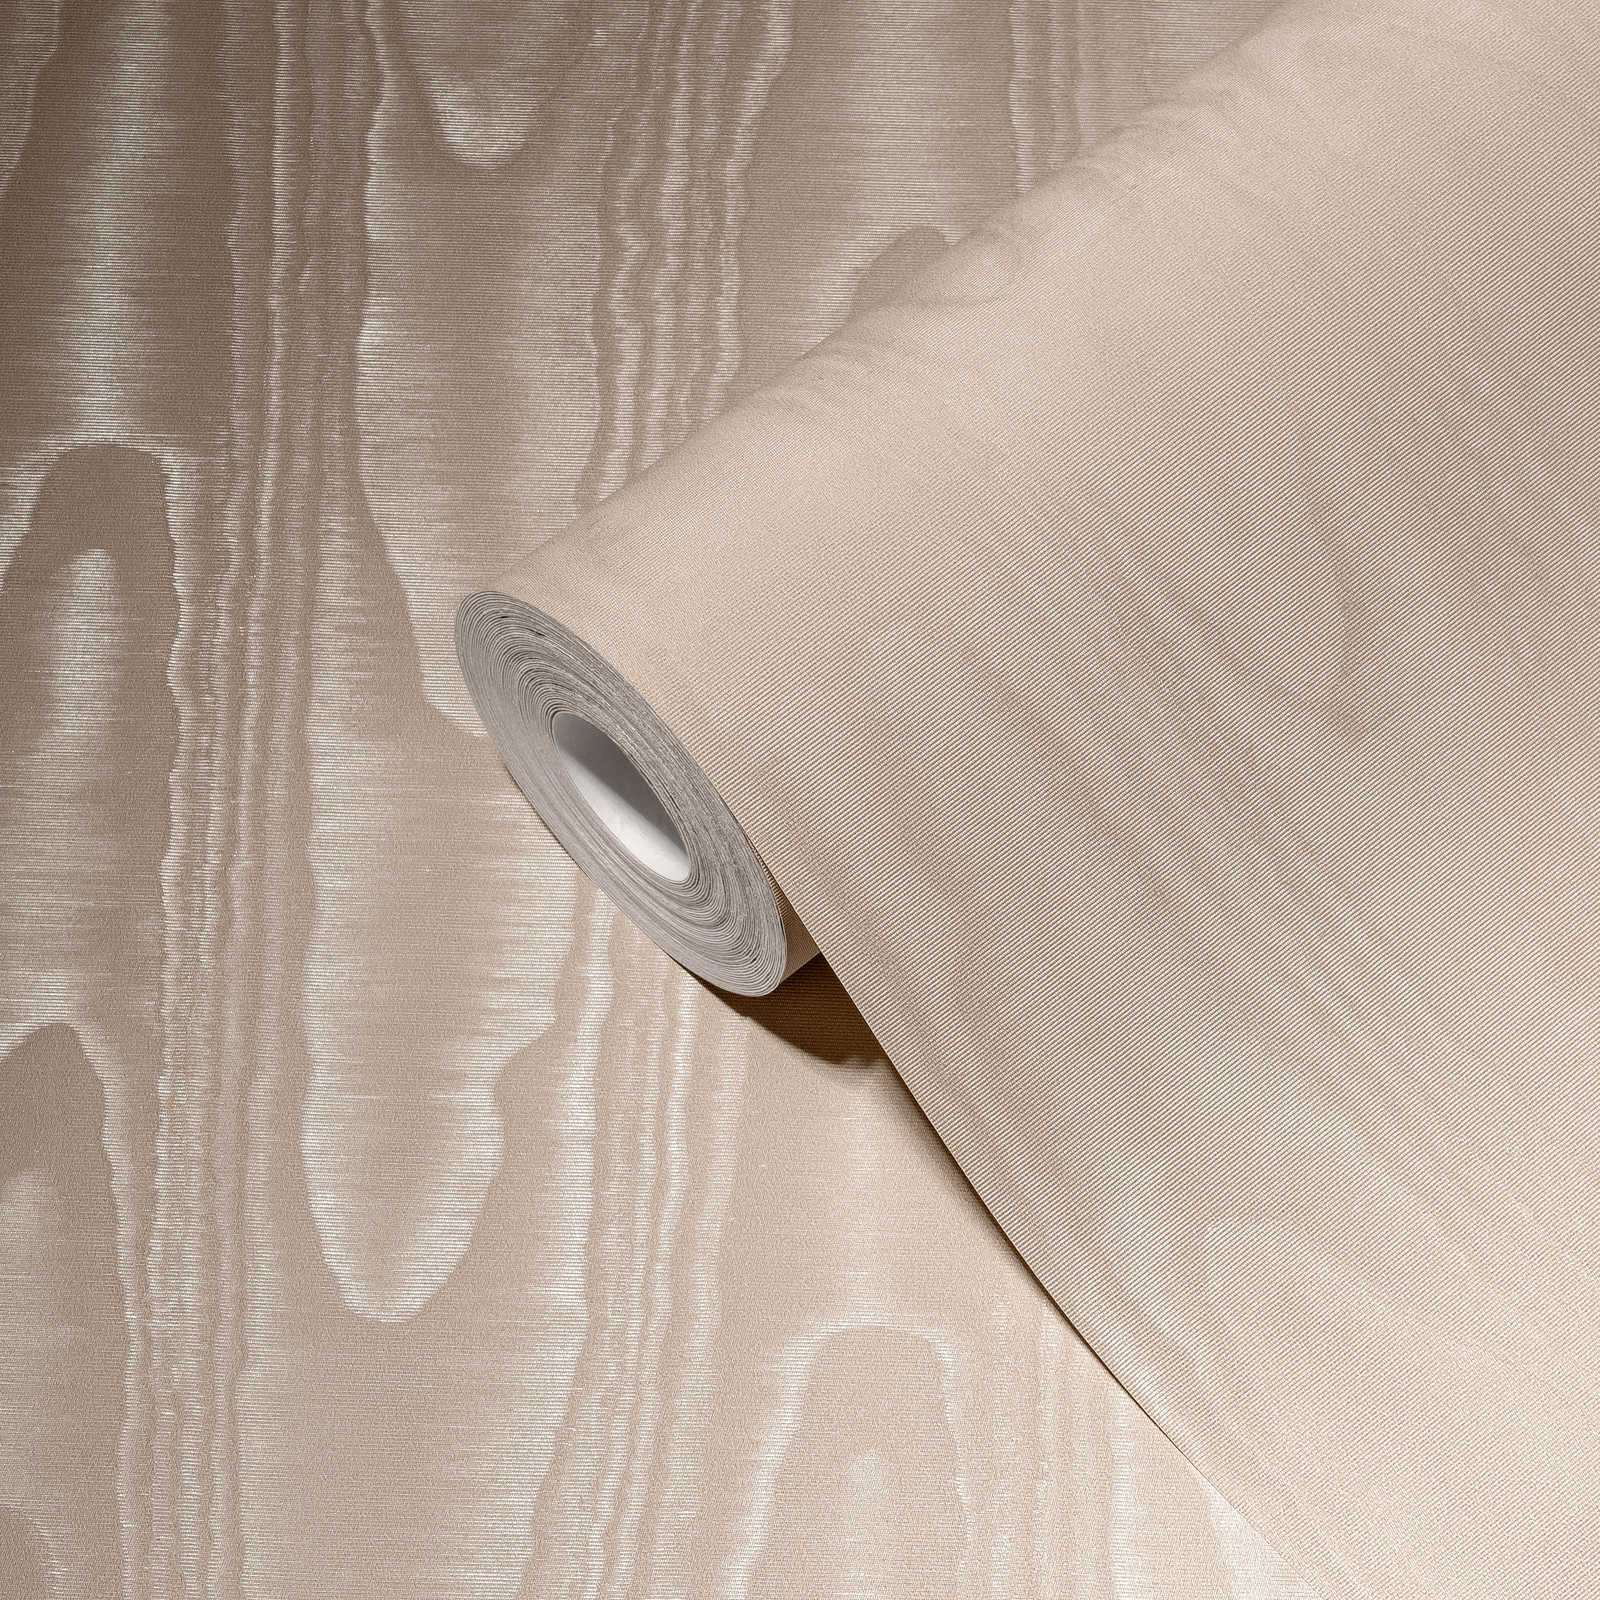             Papel pintado no tejido de color crema con efecto moiré y estructura textil
        